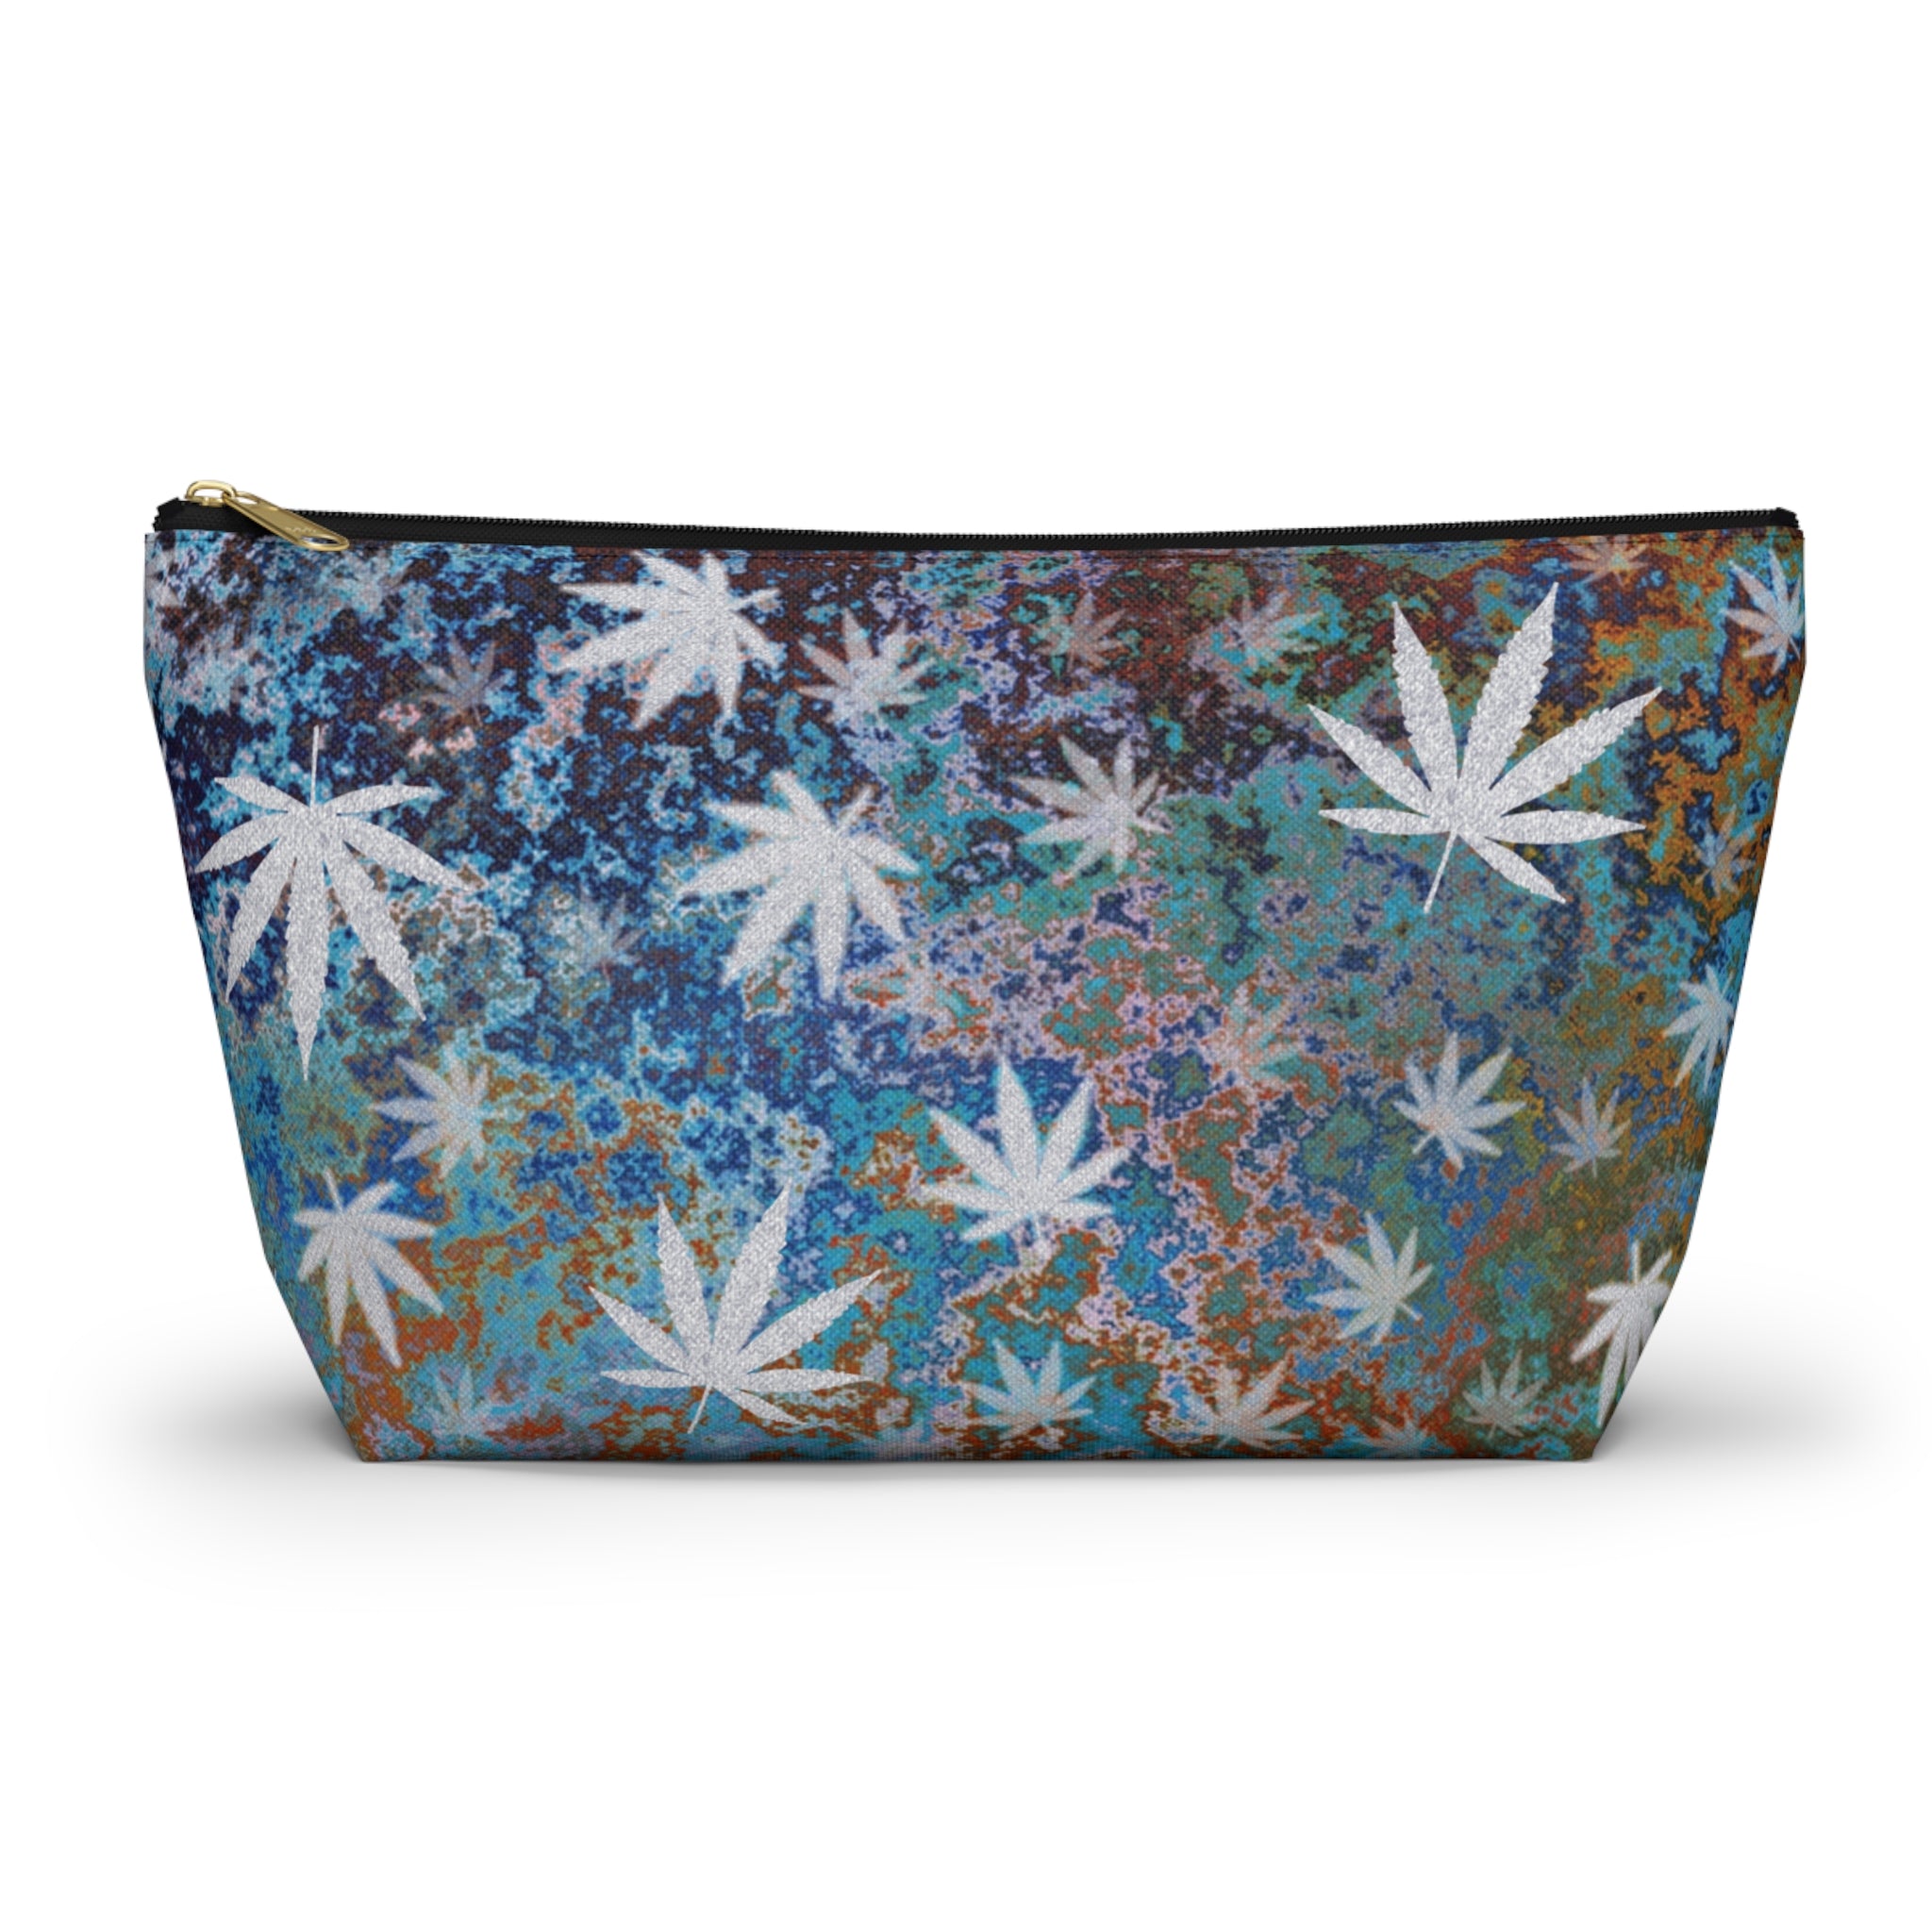 Acid Wash Look Cannabis Themed Stash Bag Accessory Bag Travel Bag Makeup Bag Stoner Gift